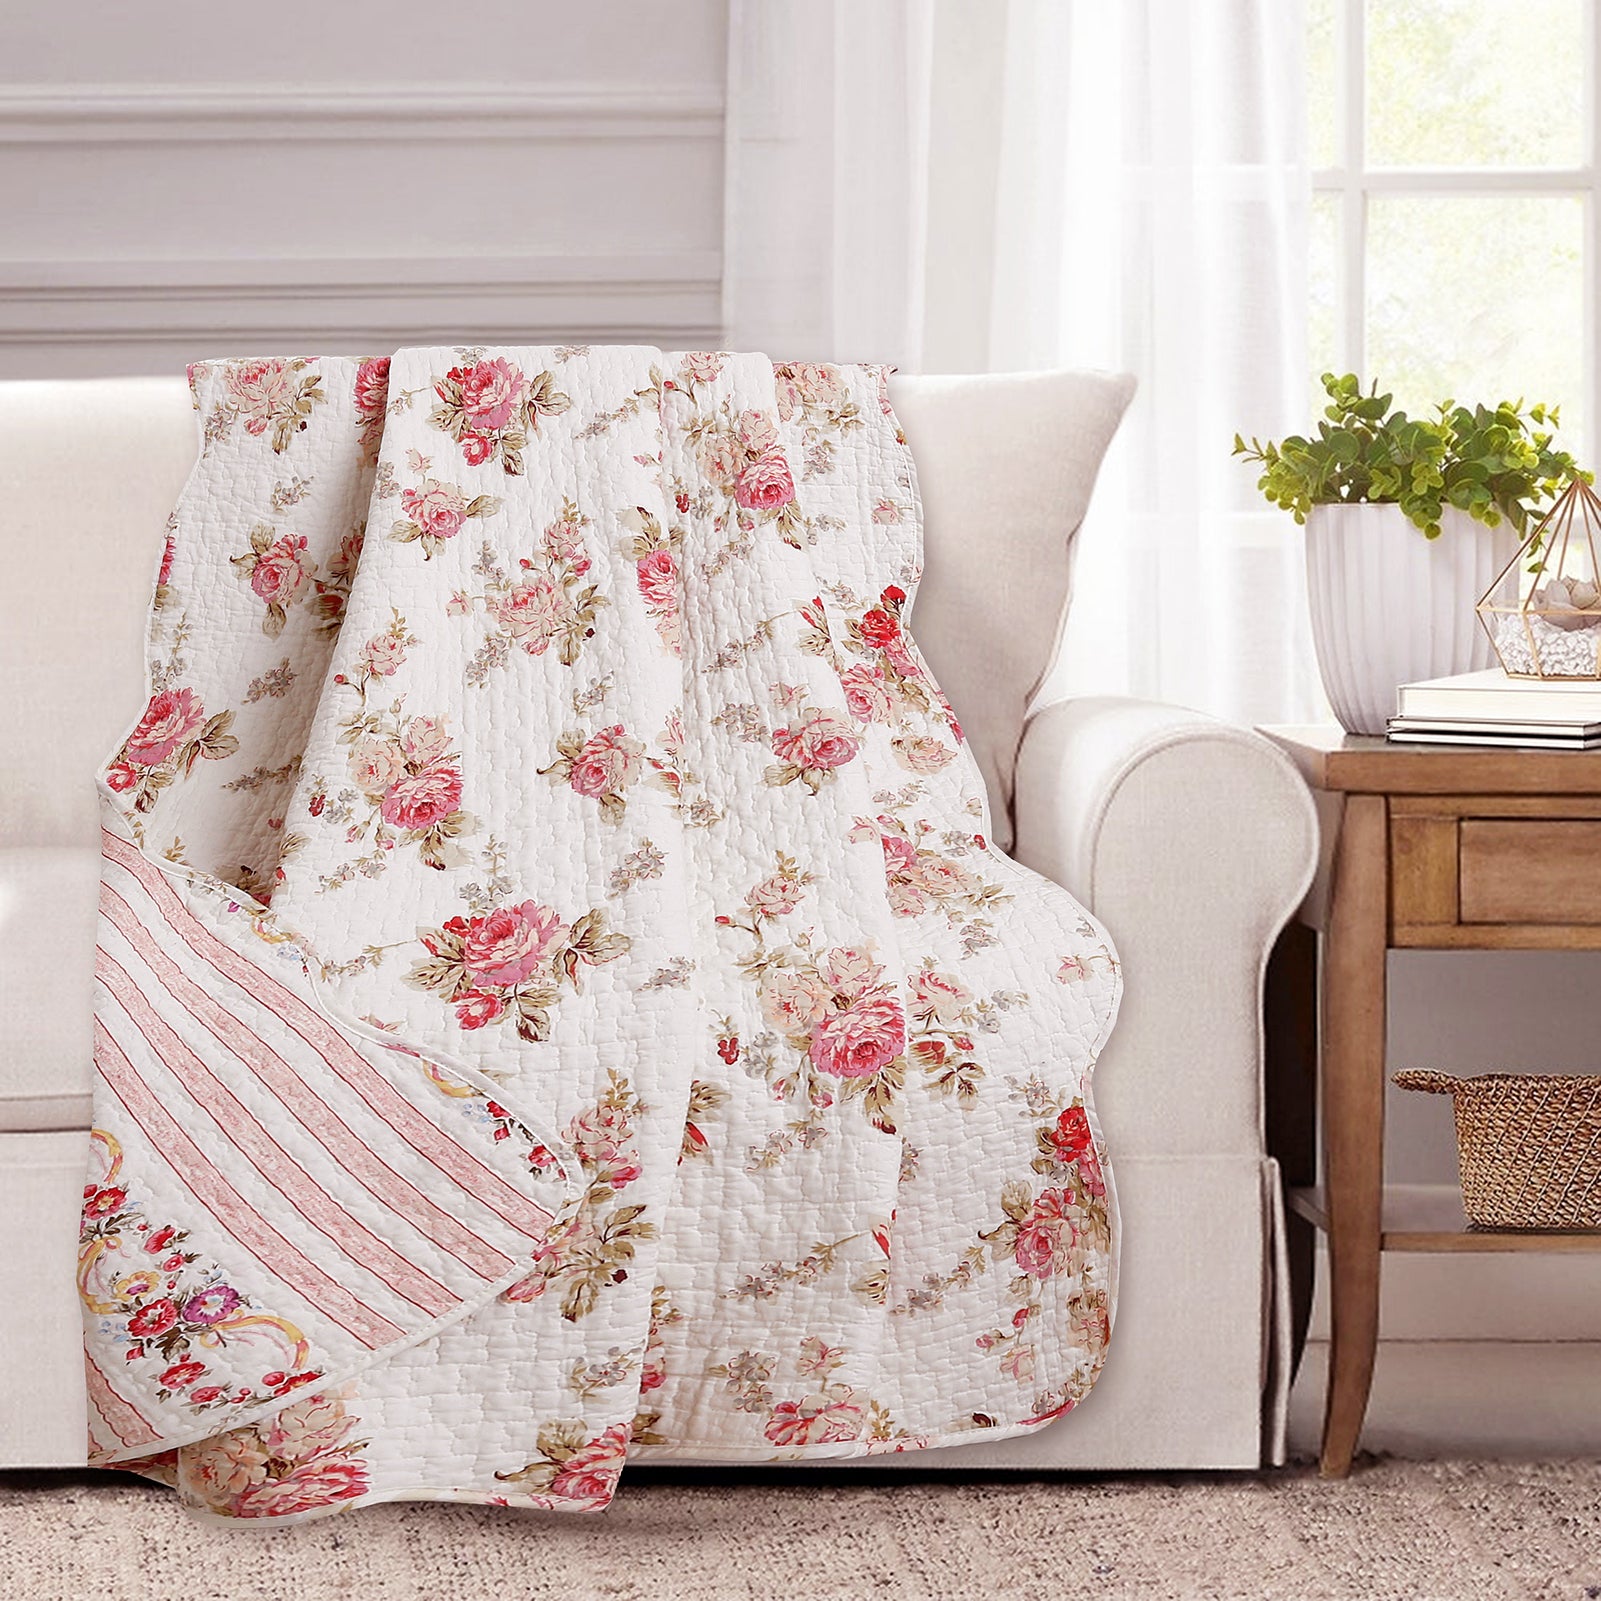 Cotton Quilt Fabric BELLES PIVOINES Floral White Multi Retro